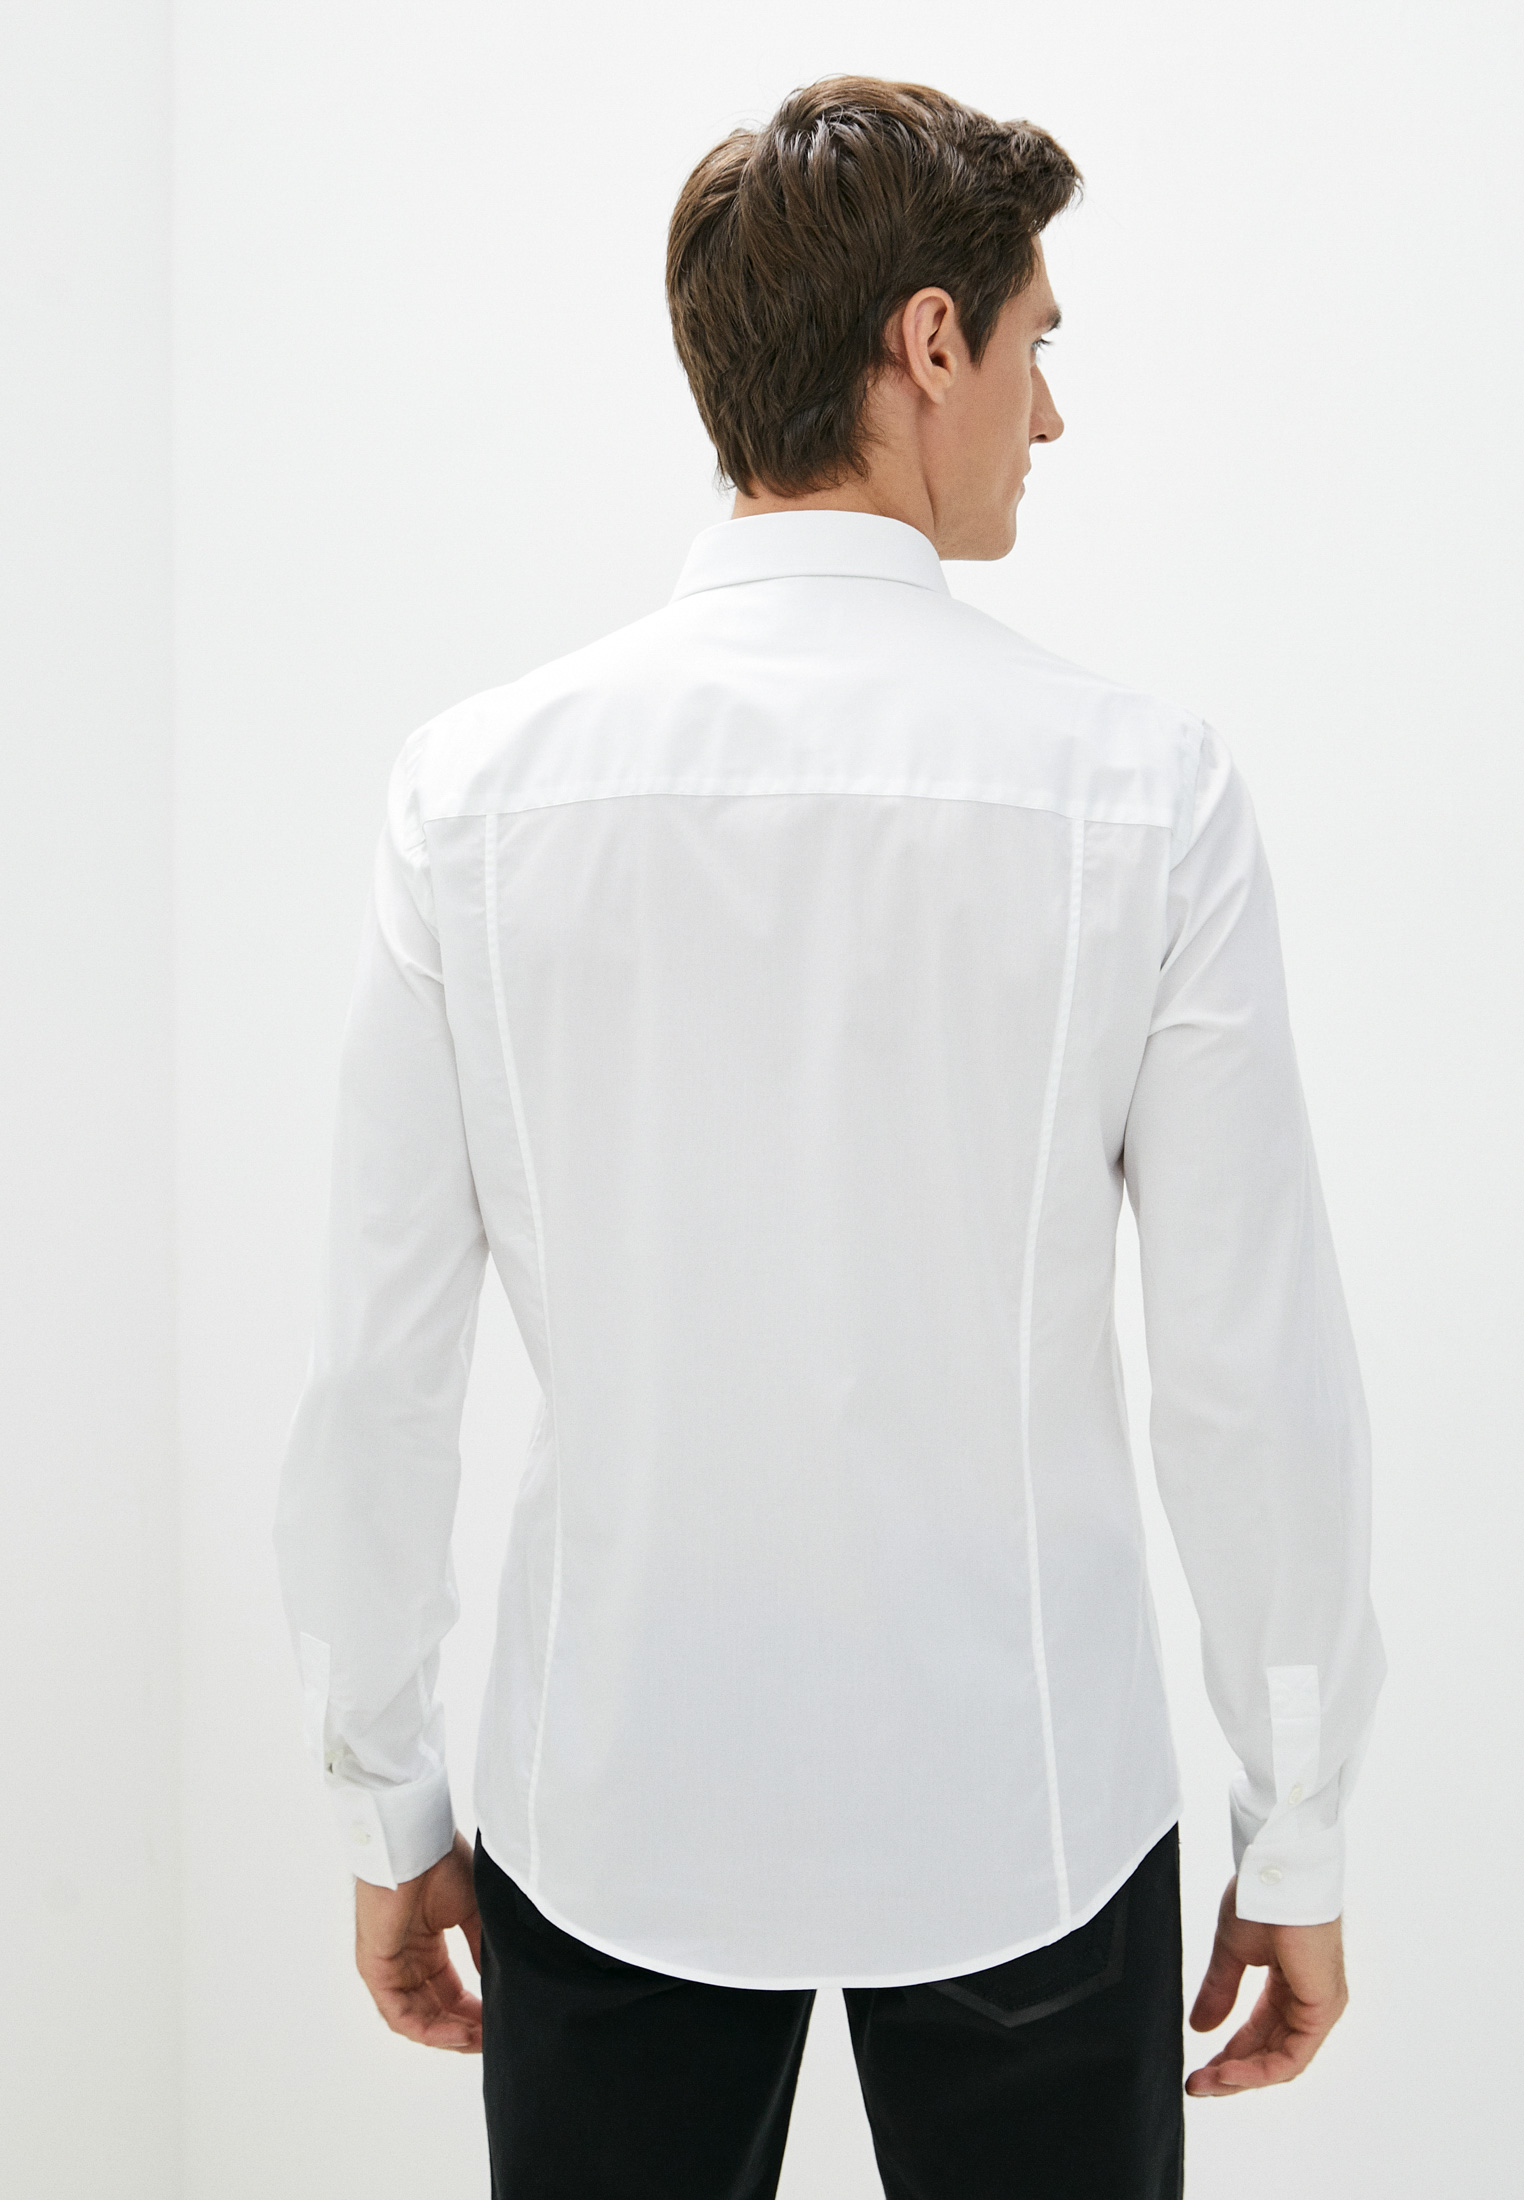 Рубашка с длинным рукавом Bikkembergs (Биккембергс) C C 011 03 S 2931: изображение 14